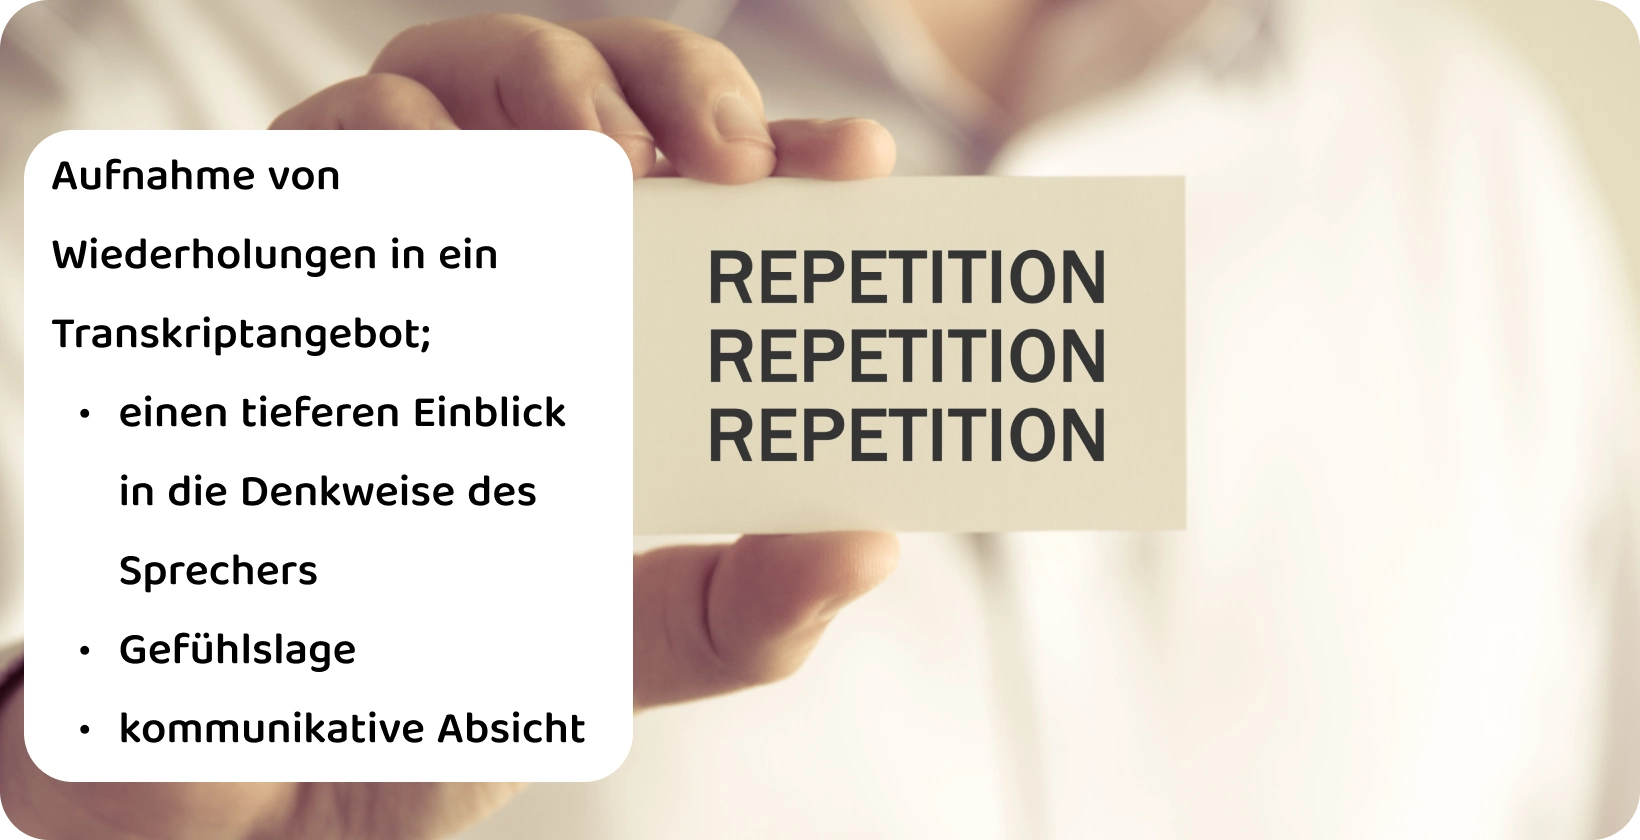 Eine Nahaufnahme einer Hand, die eine Karte mit dem Wort "Repetition" hält, veranschaulicht das Konzept der Wiederholungen in einem verbatim Transkript.